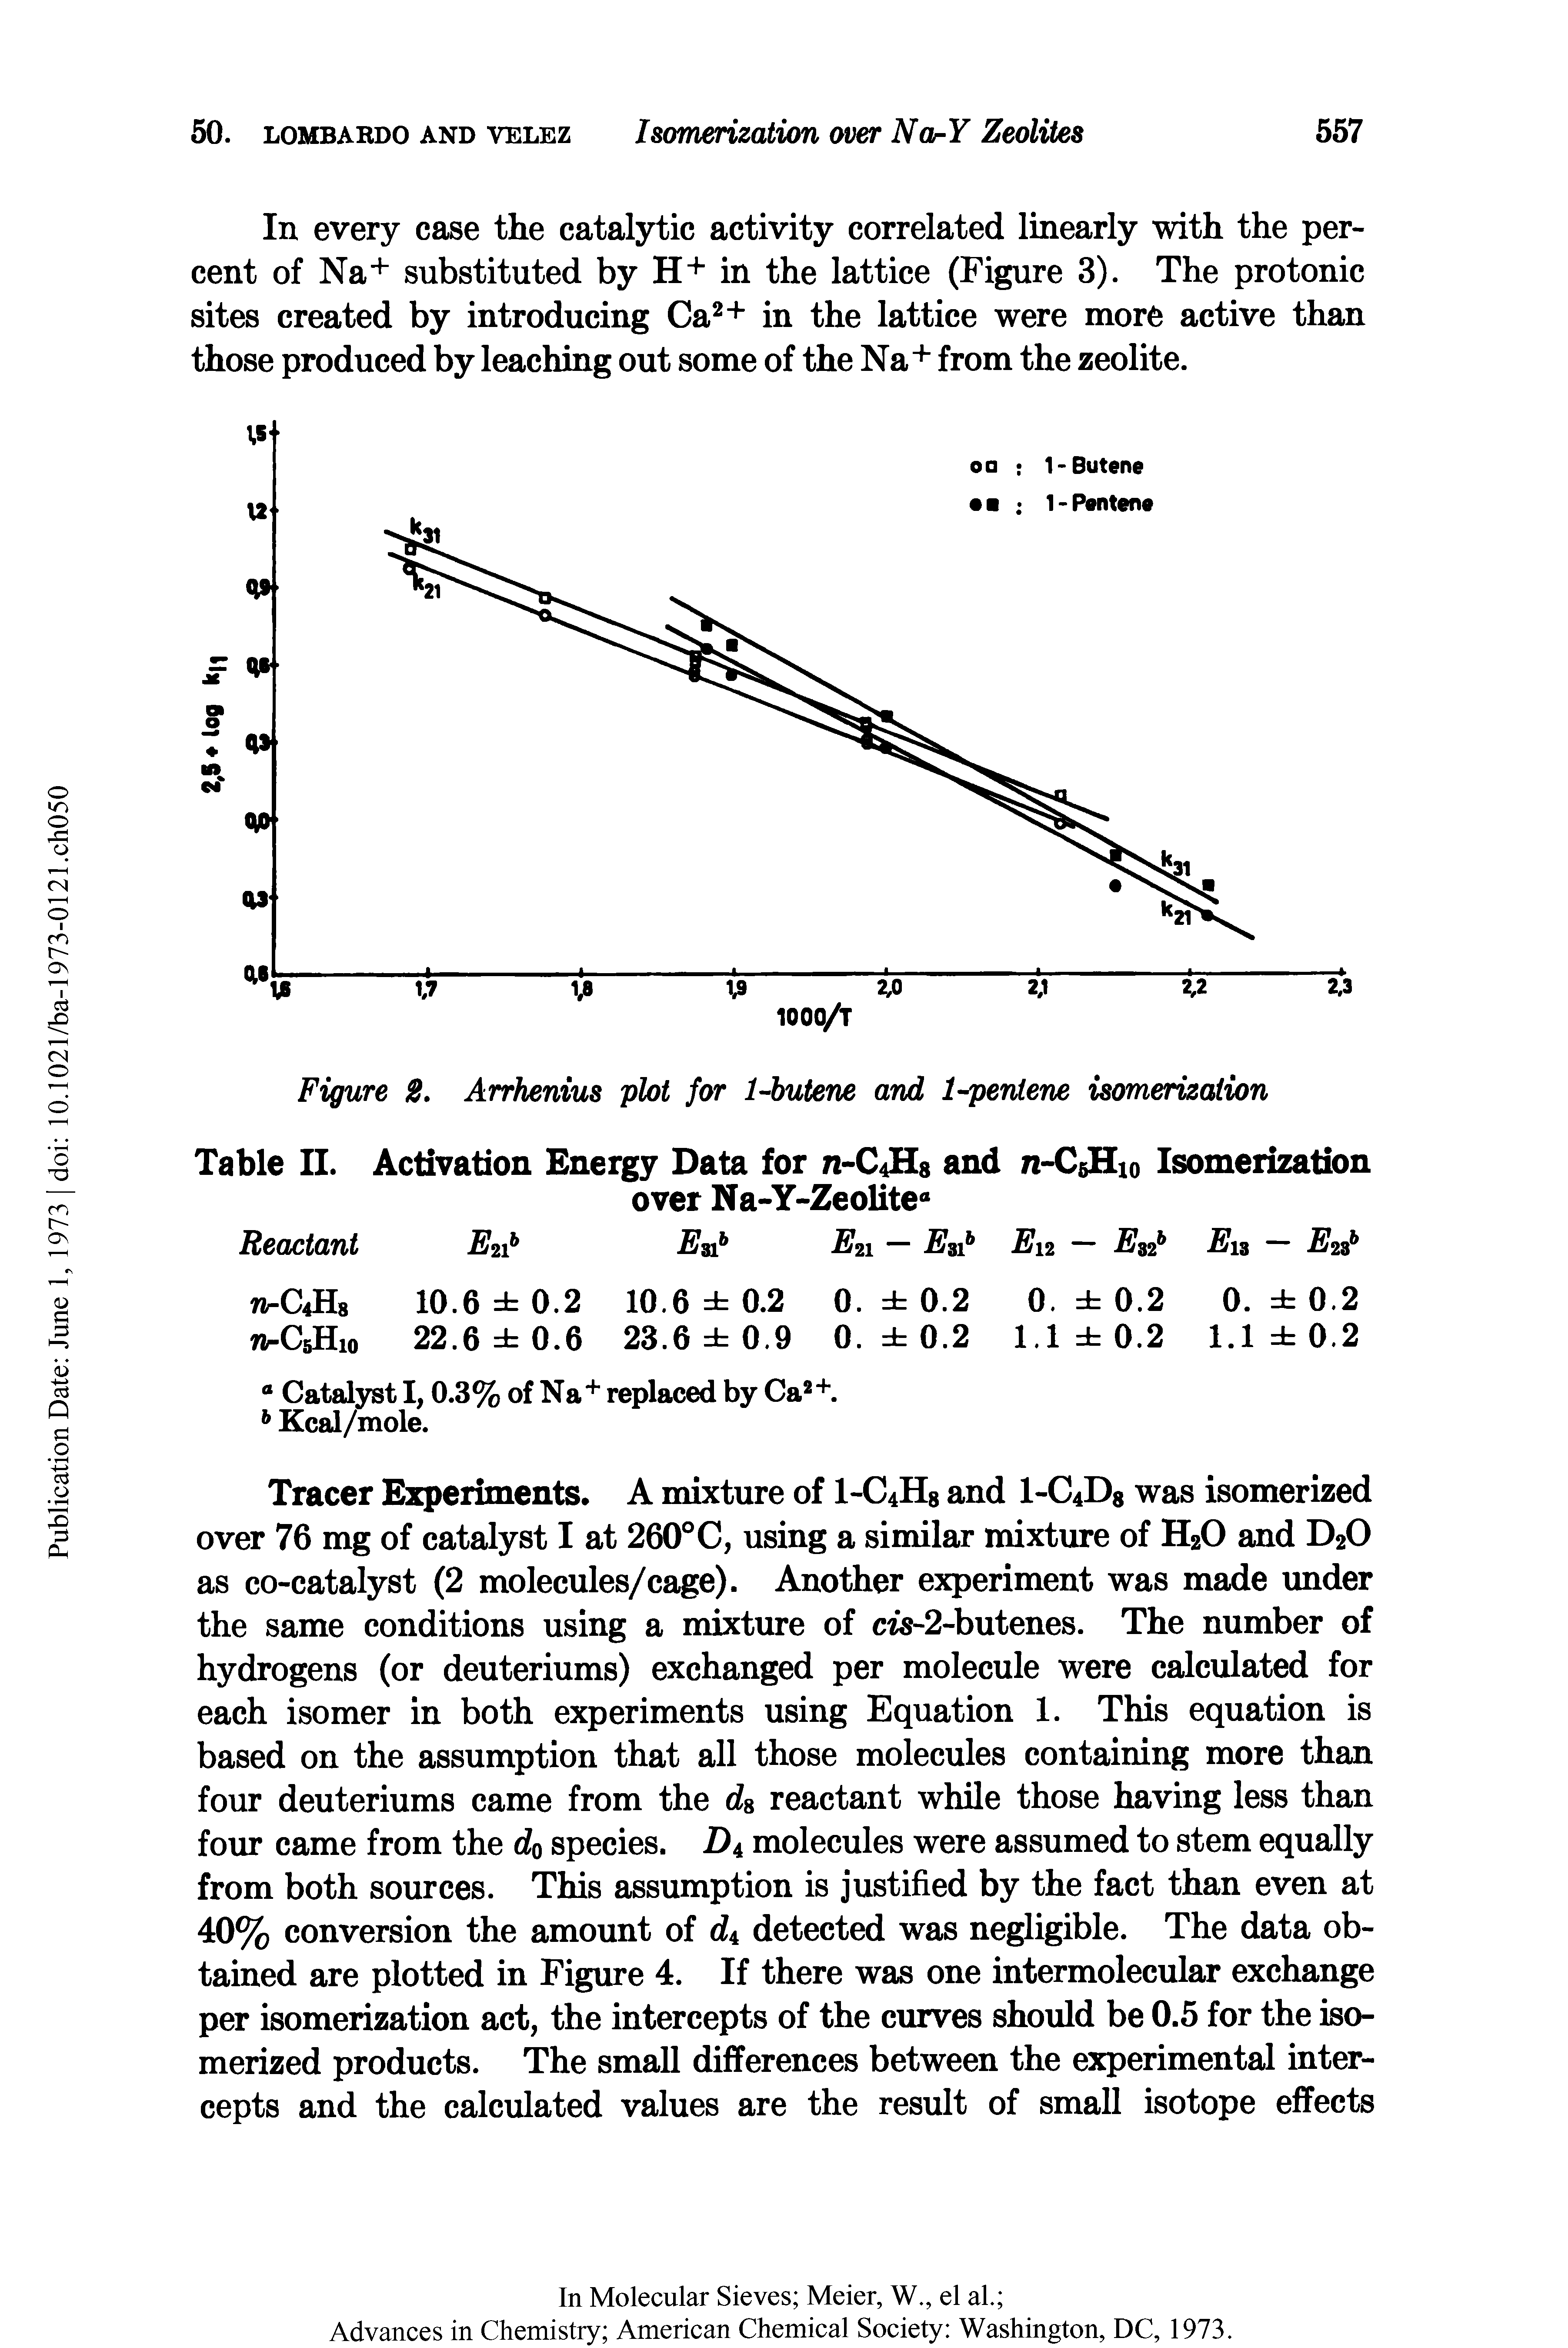 Figure 2. Arrhenius plot for 1-butene and 1-pentene isomerization...